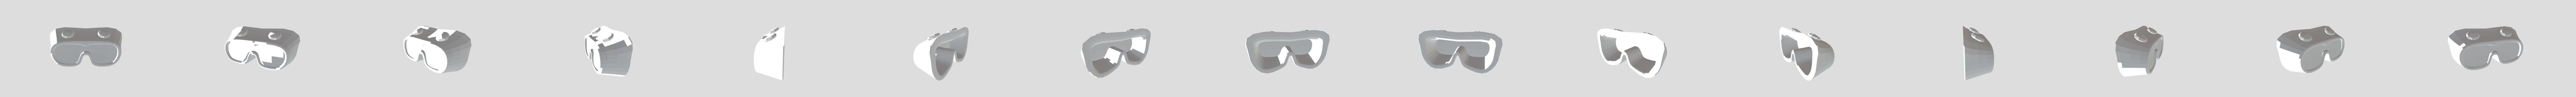 Lentes 3D models - Sketchfab